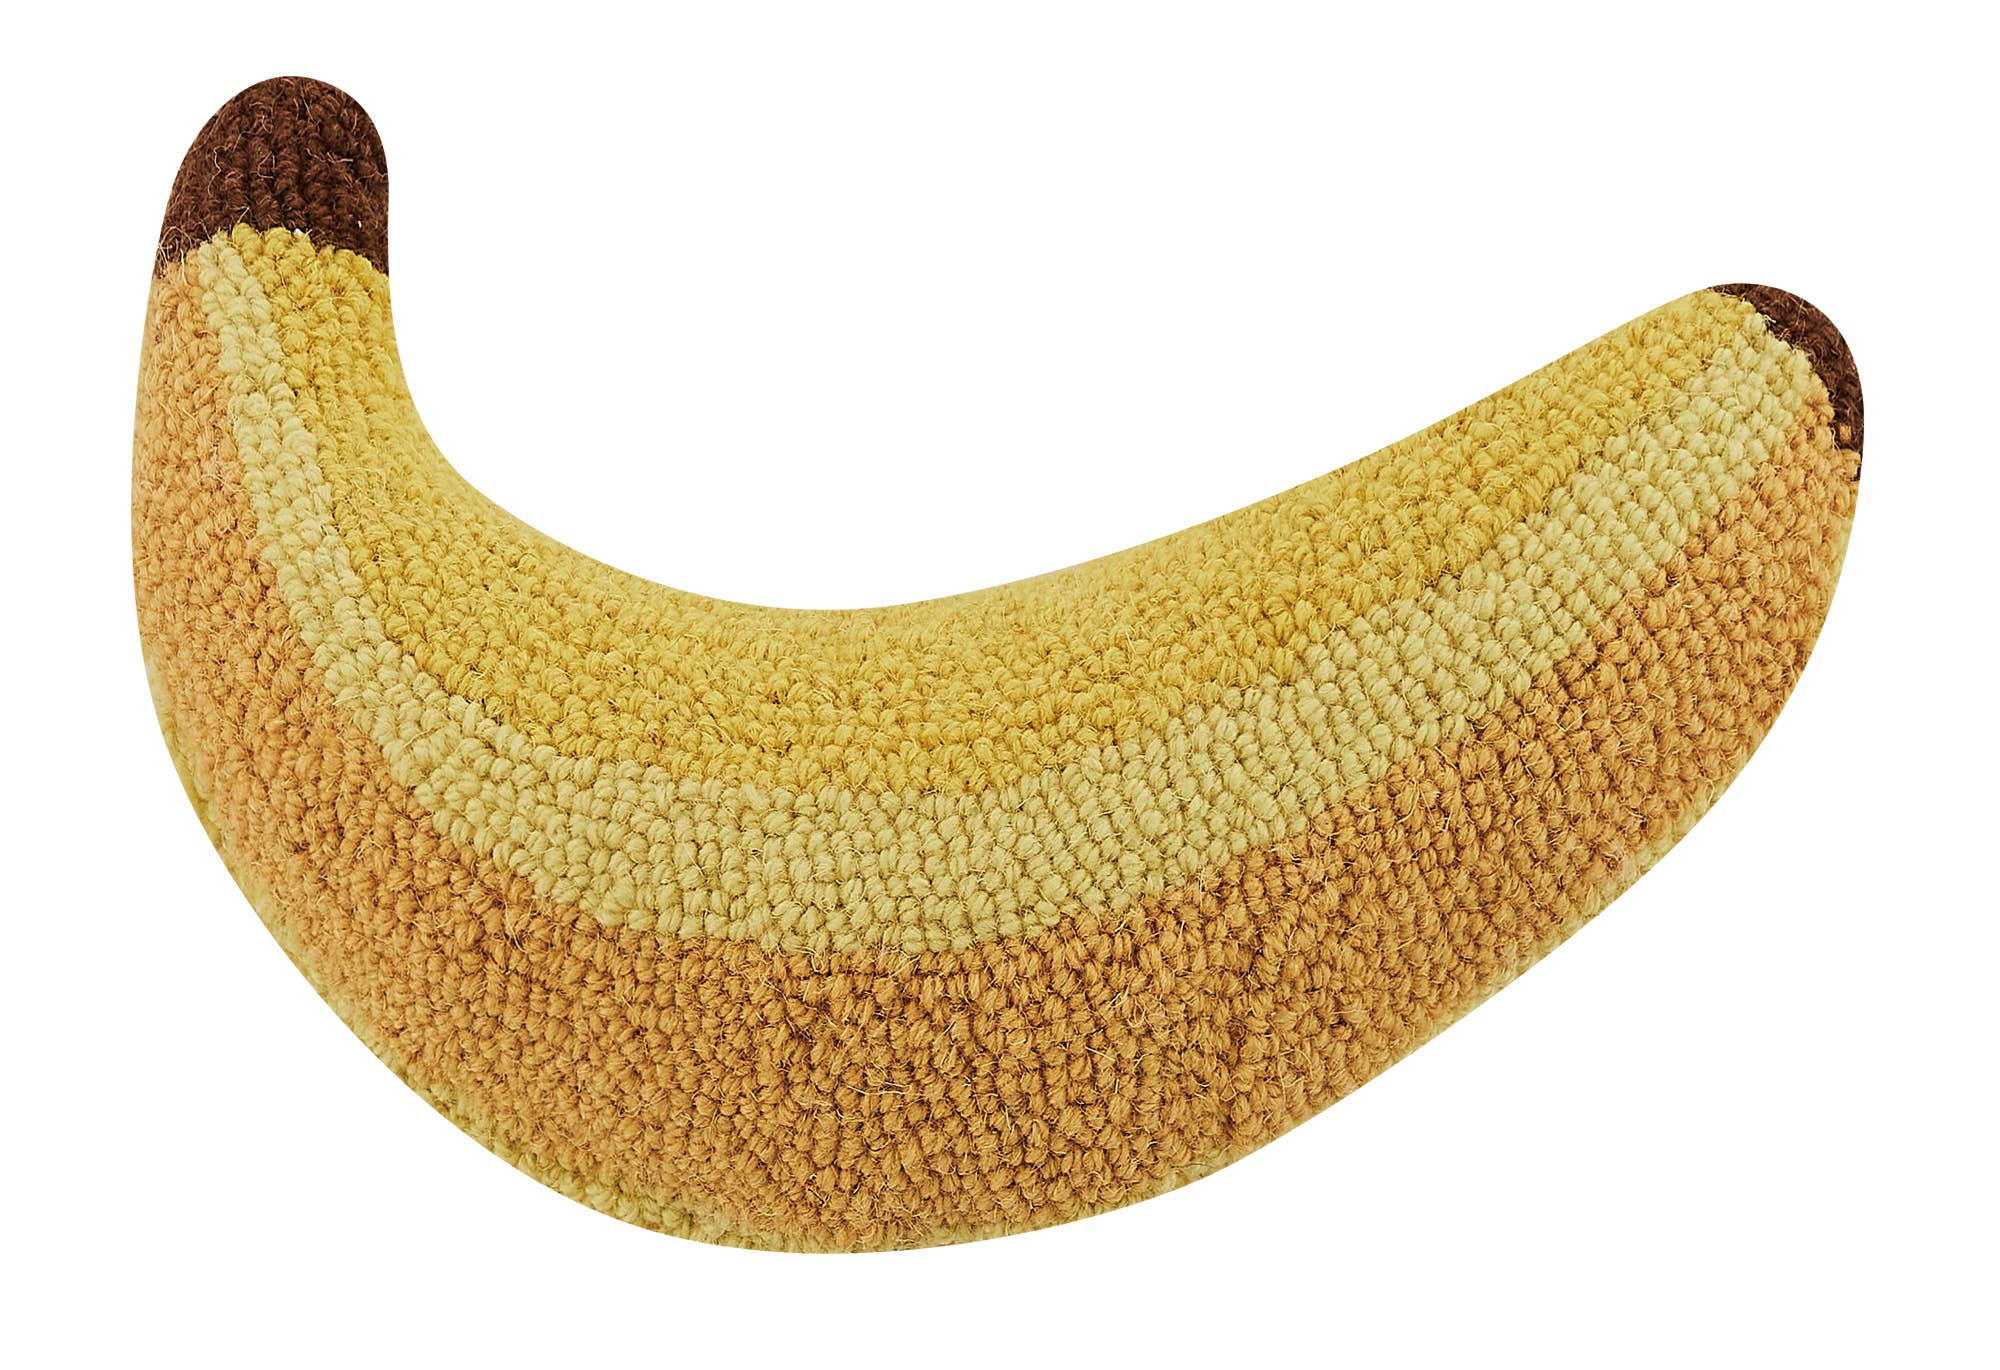 Banana Pillow